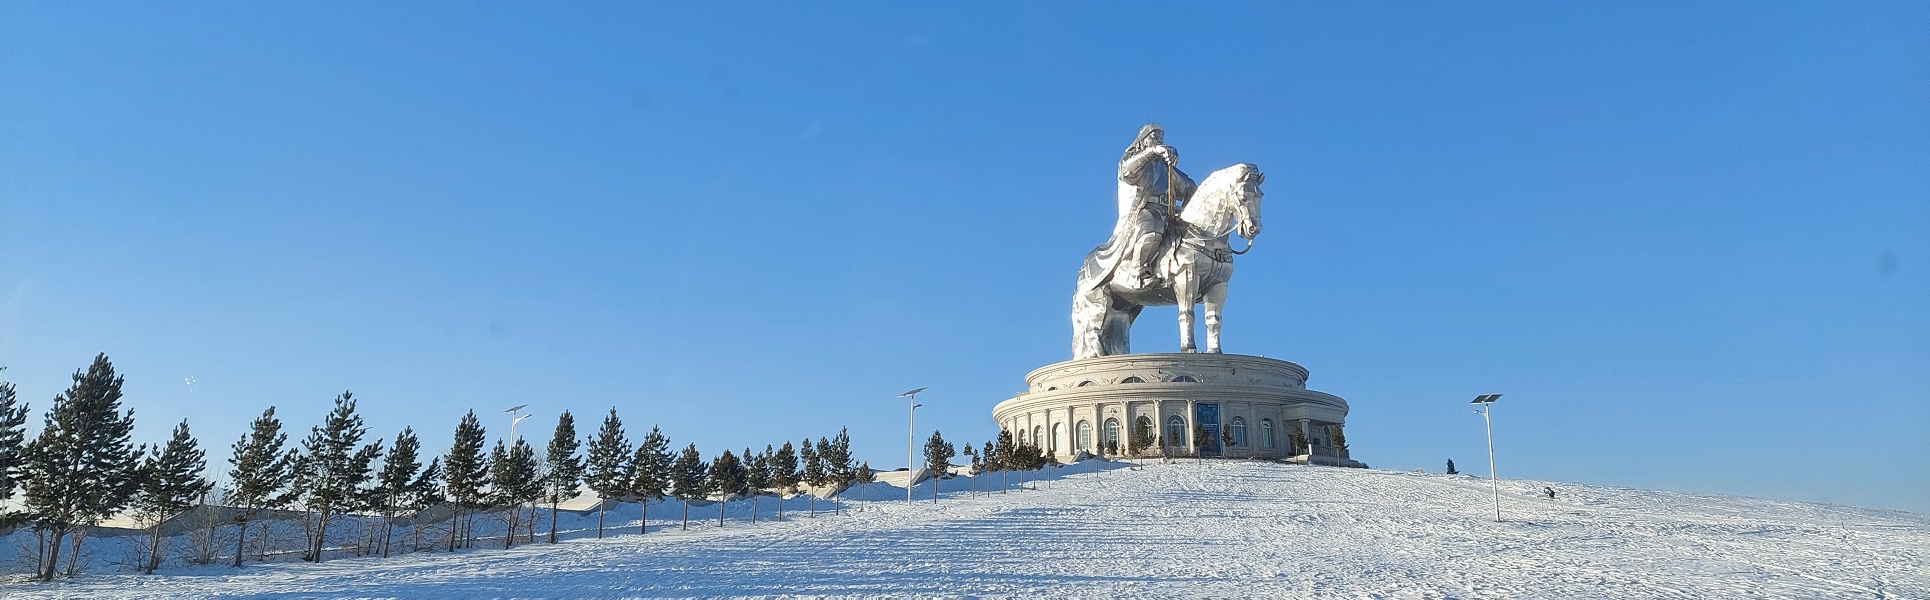 Страна синего неба: путешествие в Монголию из Иркутска